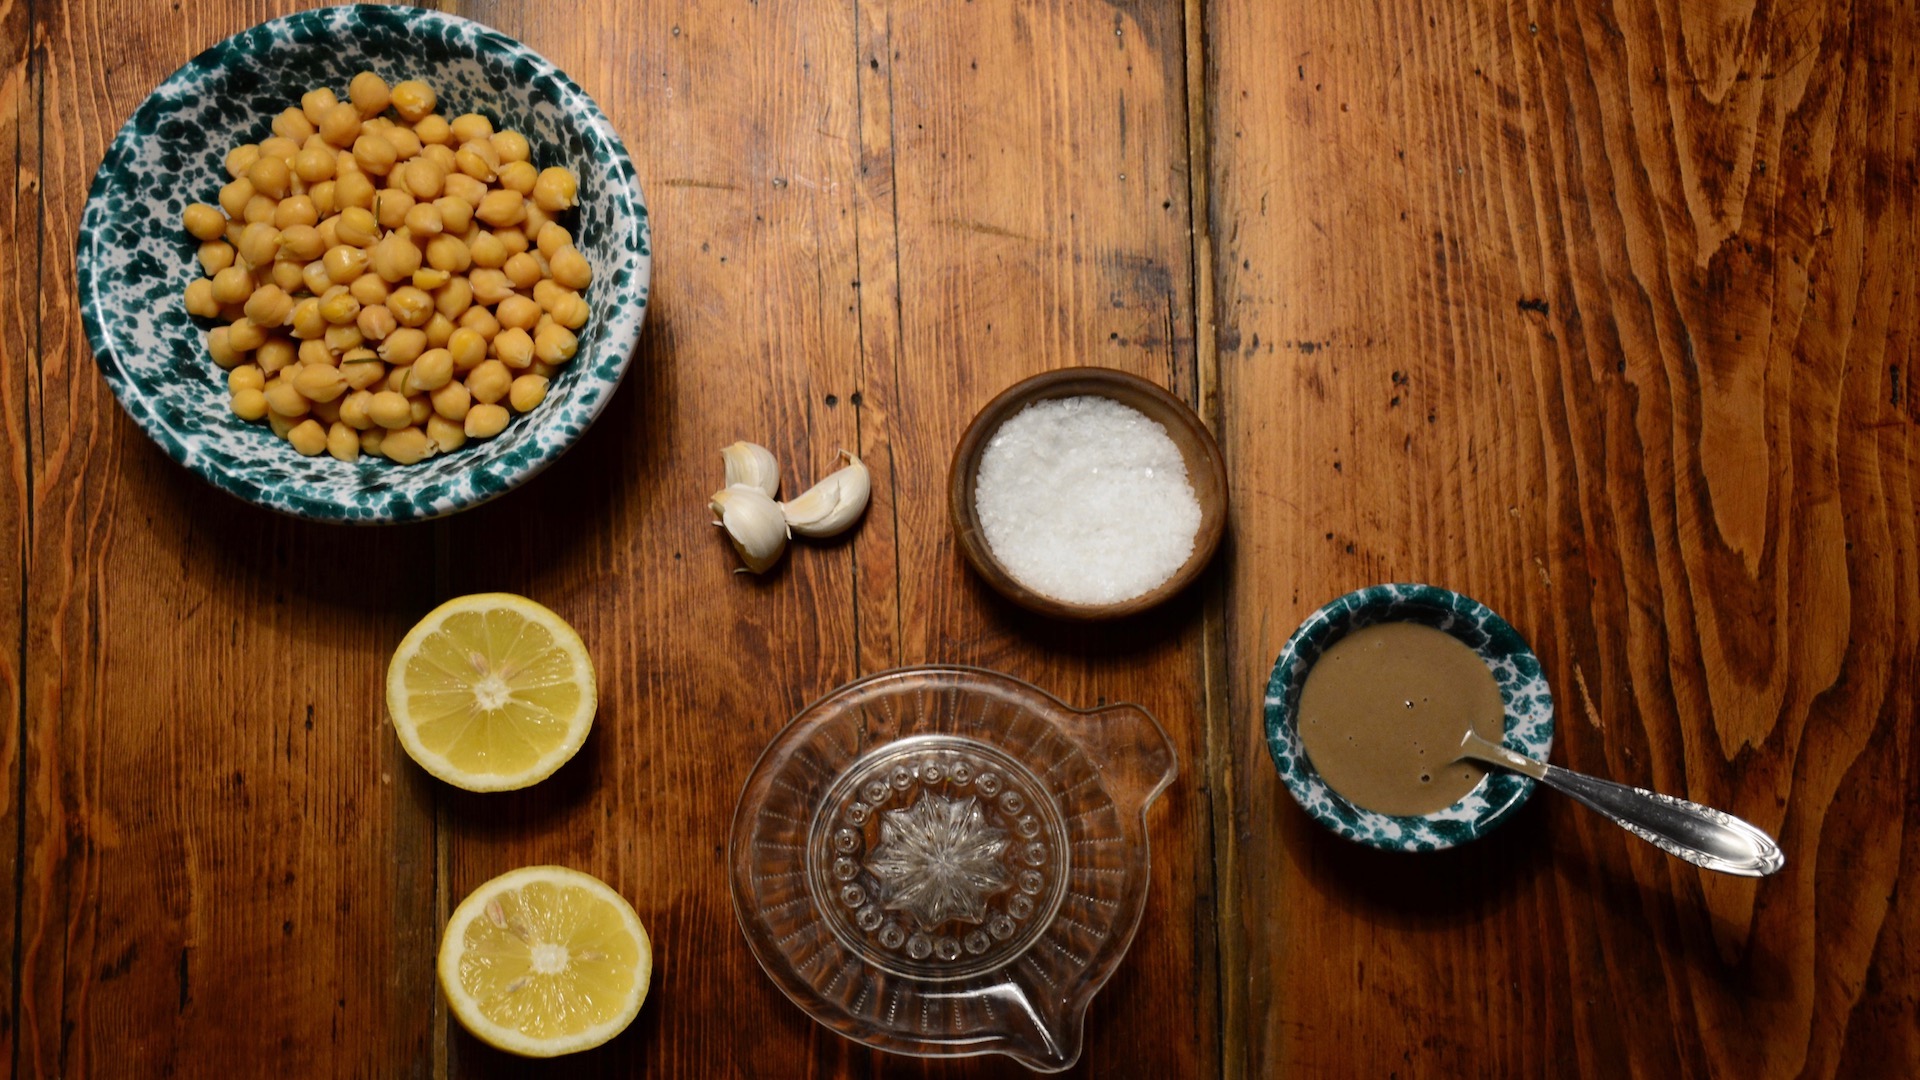 Hummus di ceci con gli avanzi: ricetta step by step - Riciblog